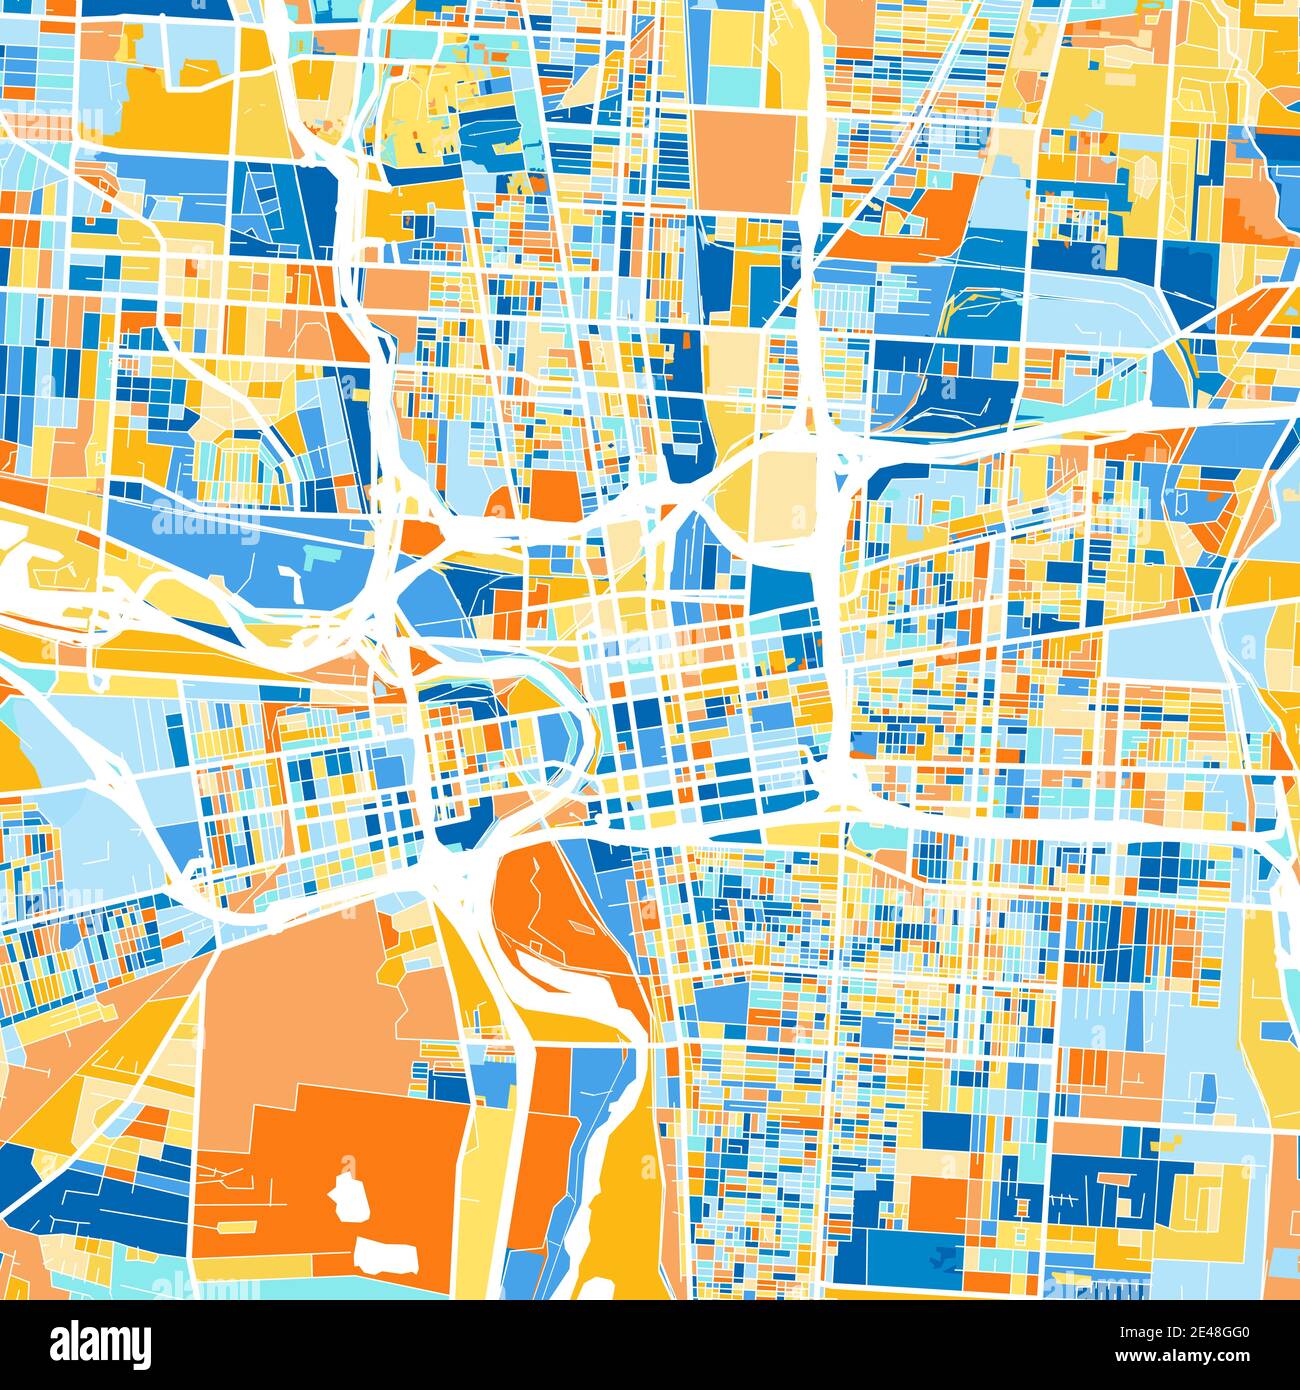 Carte d'art en couleur de Columbus, Ohio, UnitedStates dans les bleus et les oranges. Les gradations de couleurs de la carte de Columbus suivent un motif aléatoire. Illustration de Vecteur